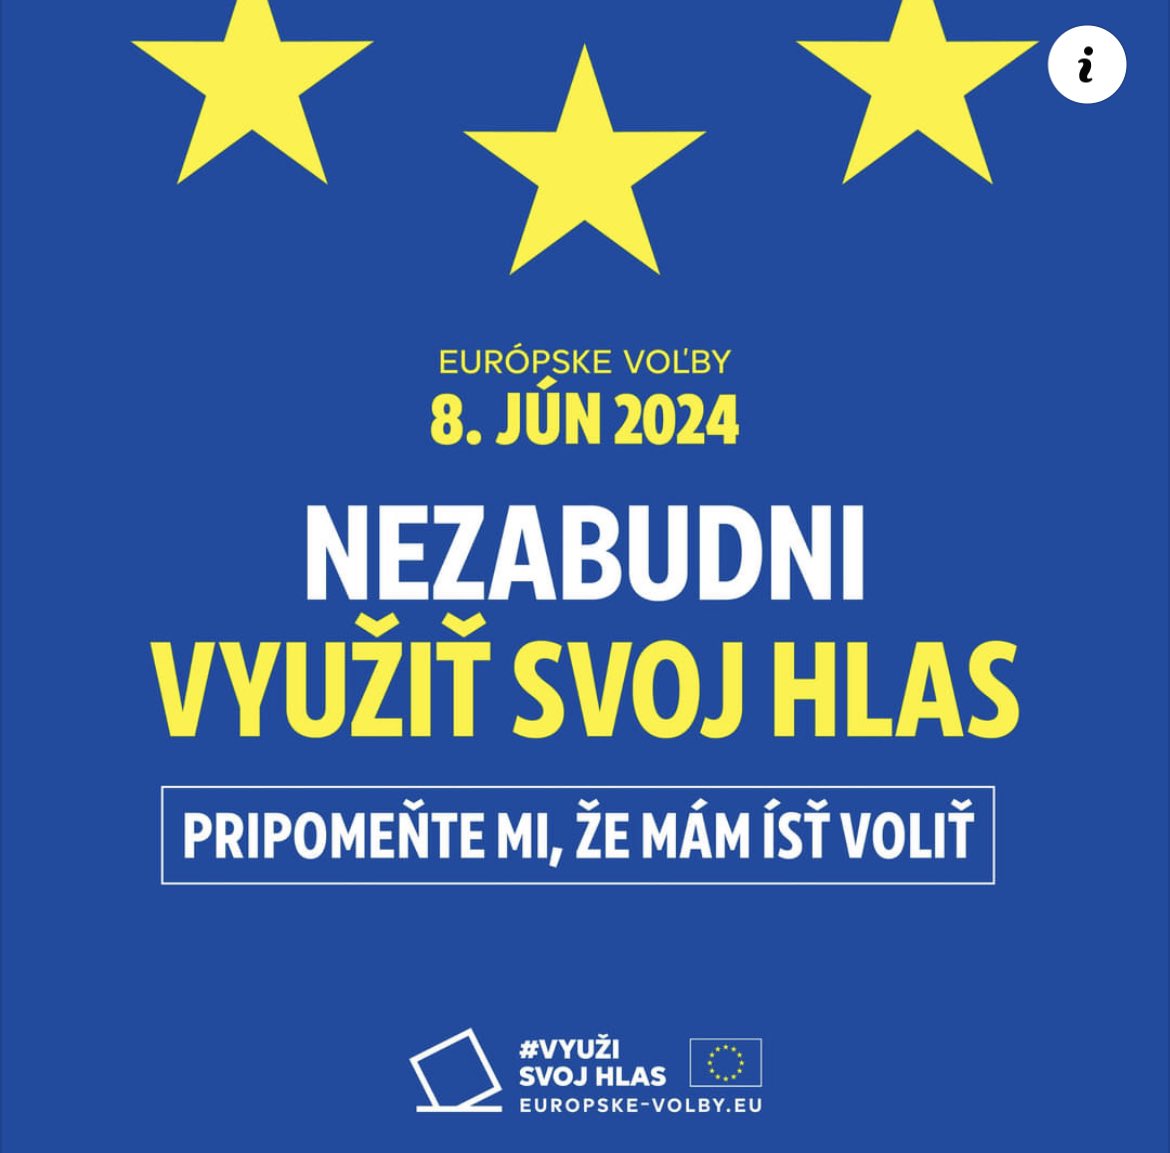 🇸🇰🇪🇺Zaregistrujte sa, aby ste dostávali upozornenia týkajúce sa volieb a aby ste nezabudli využiť svoj hlas. #využisvojhlas elections.europa.eu/sk/use-your-vo… via @Europarl_SK